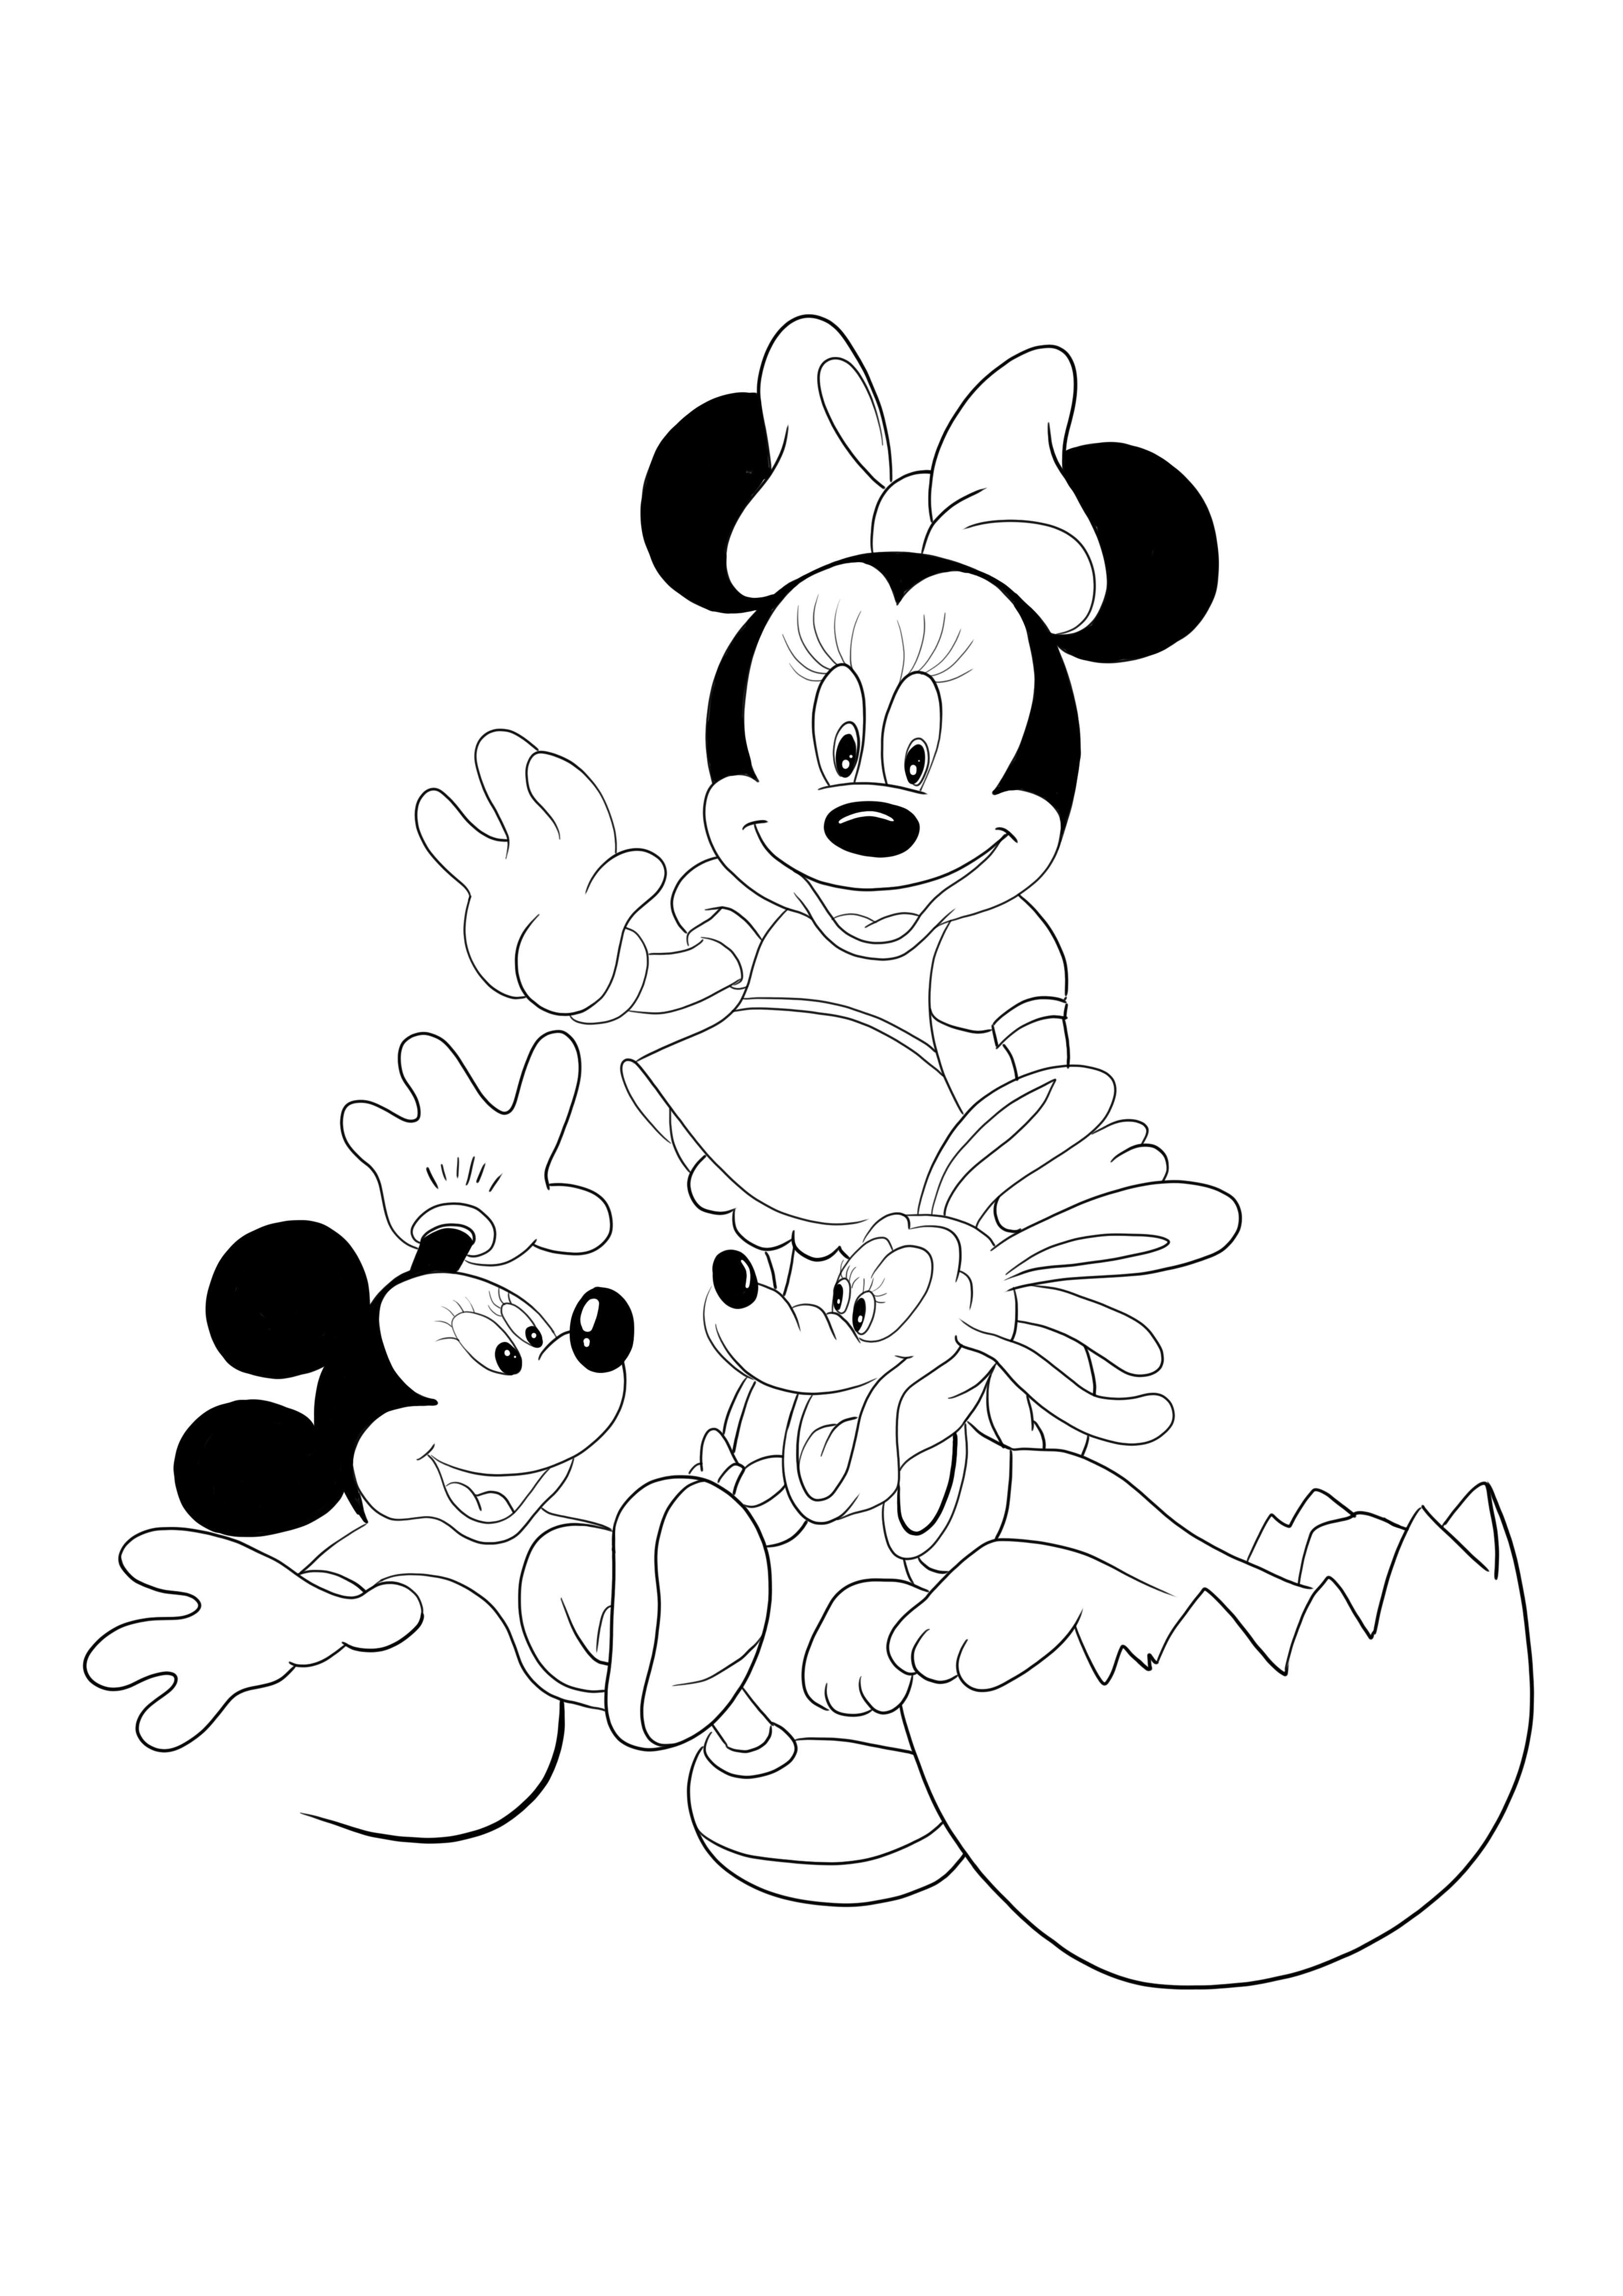 Pencetakan dan pewarnaan gratis Minnie dan Mickey untuk anak-anak dari segala usia